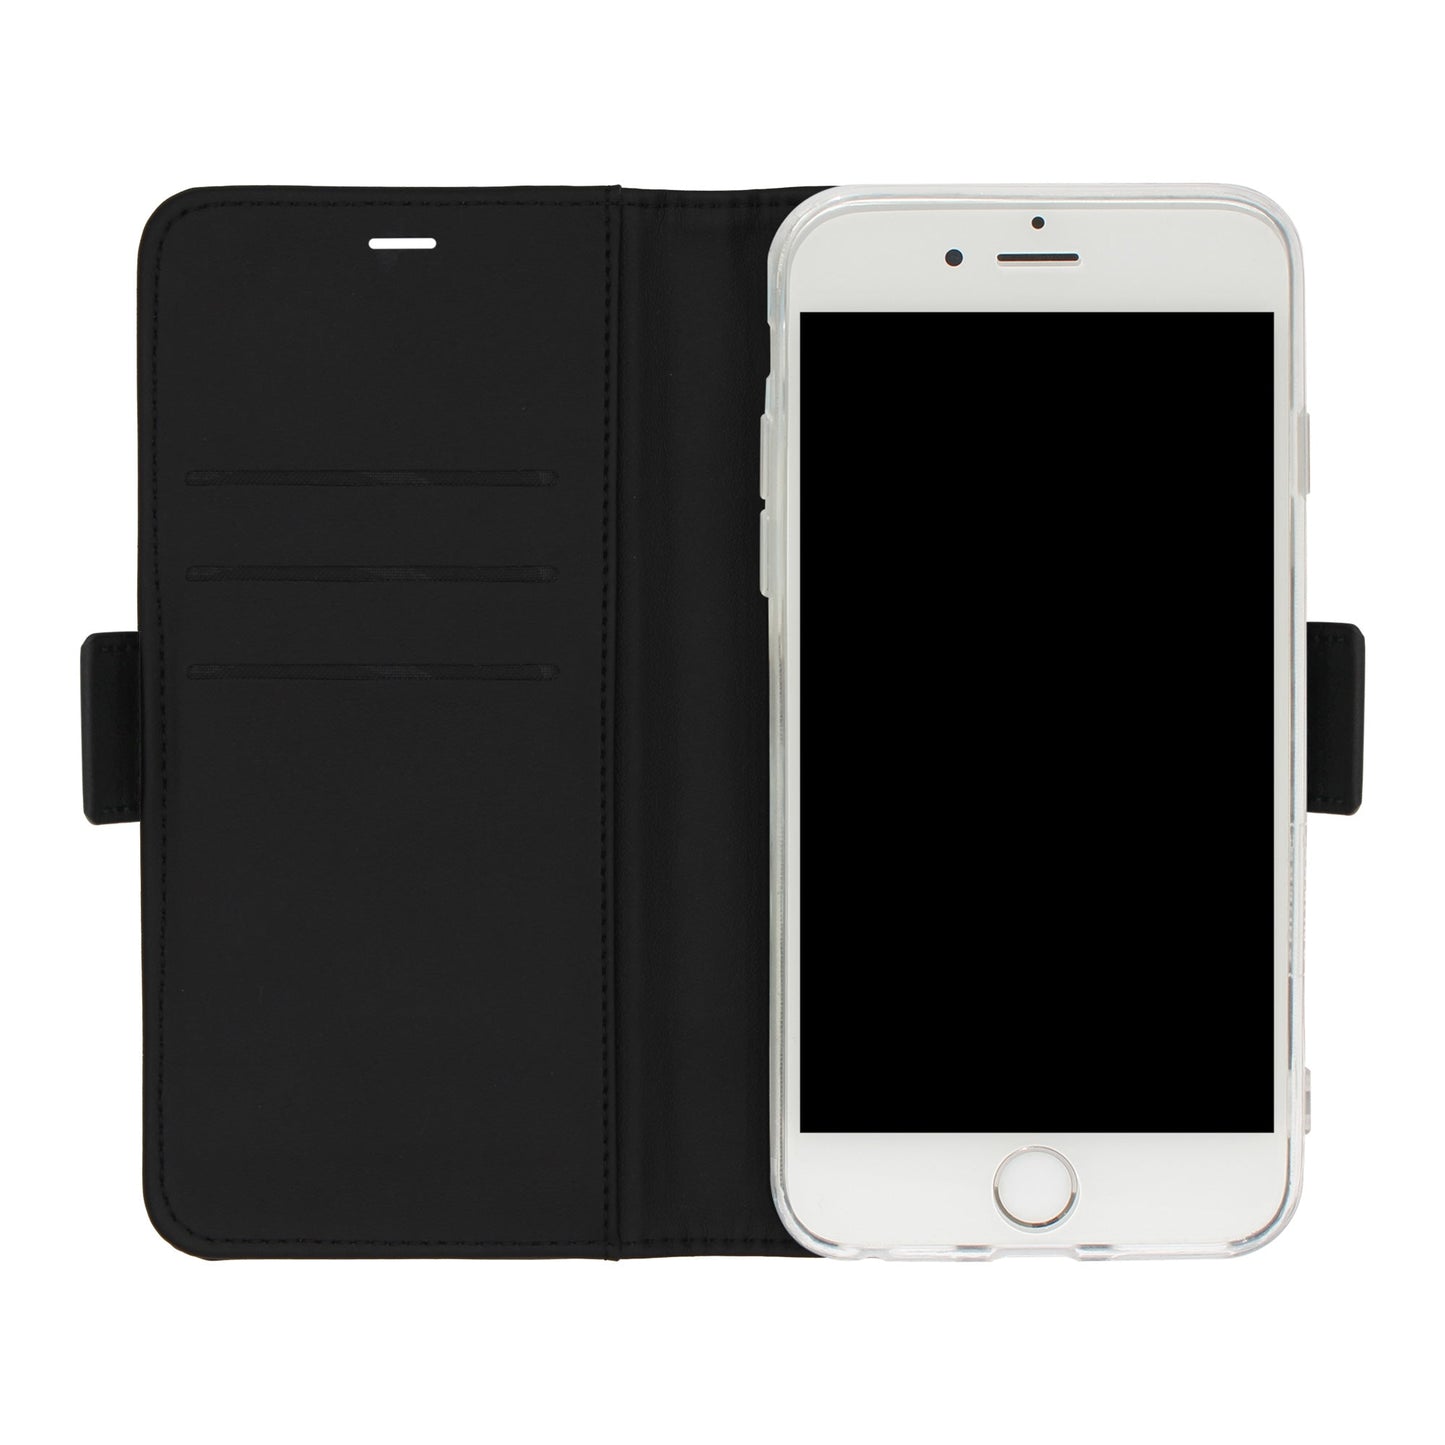 Coque Uni Victor noire pour iPhone 5/5S/SE 1